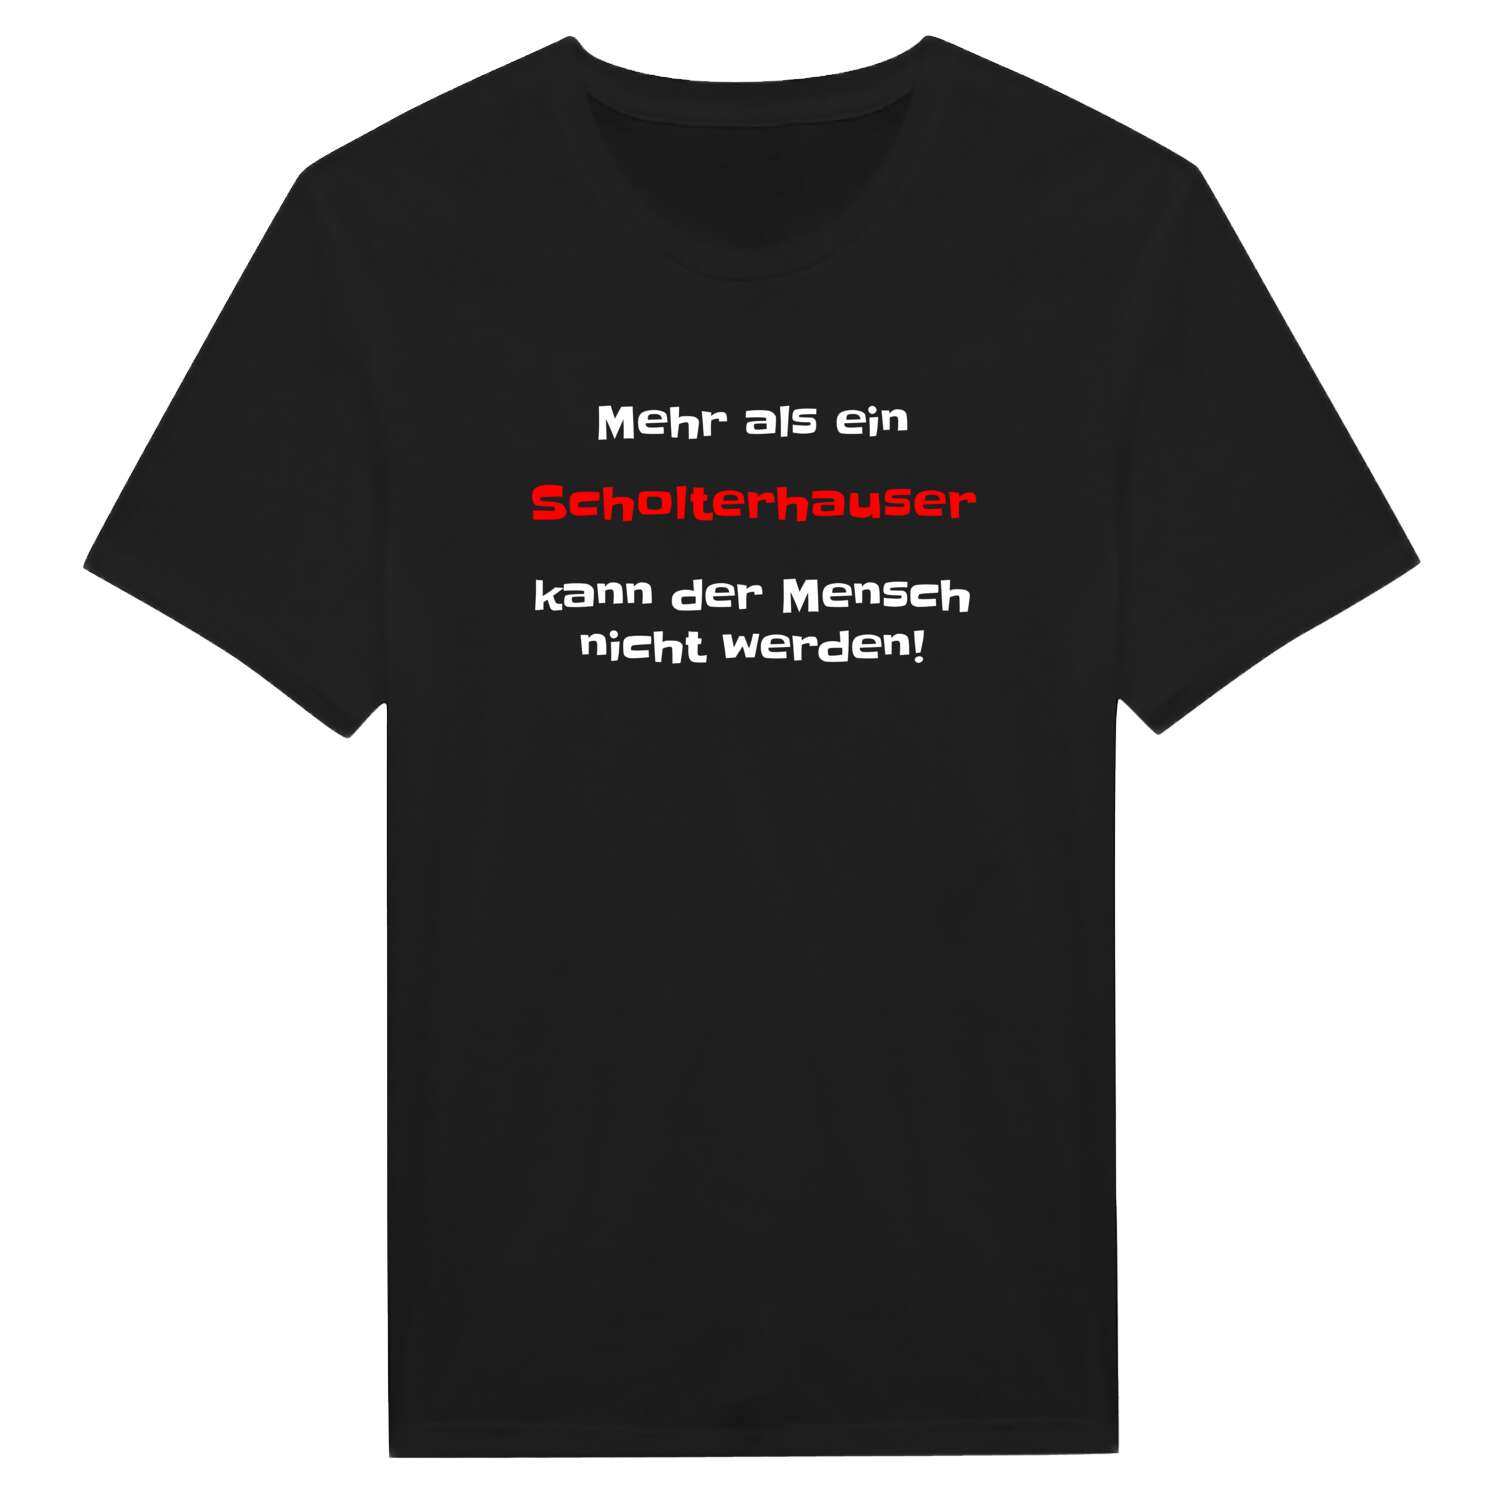 Scholterhaus T-Shirt »Mehr als ein«